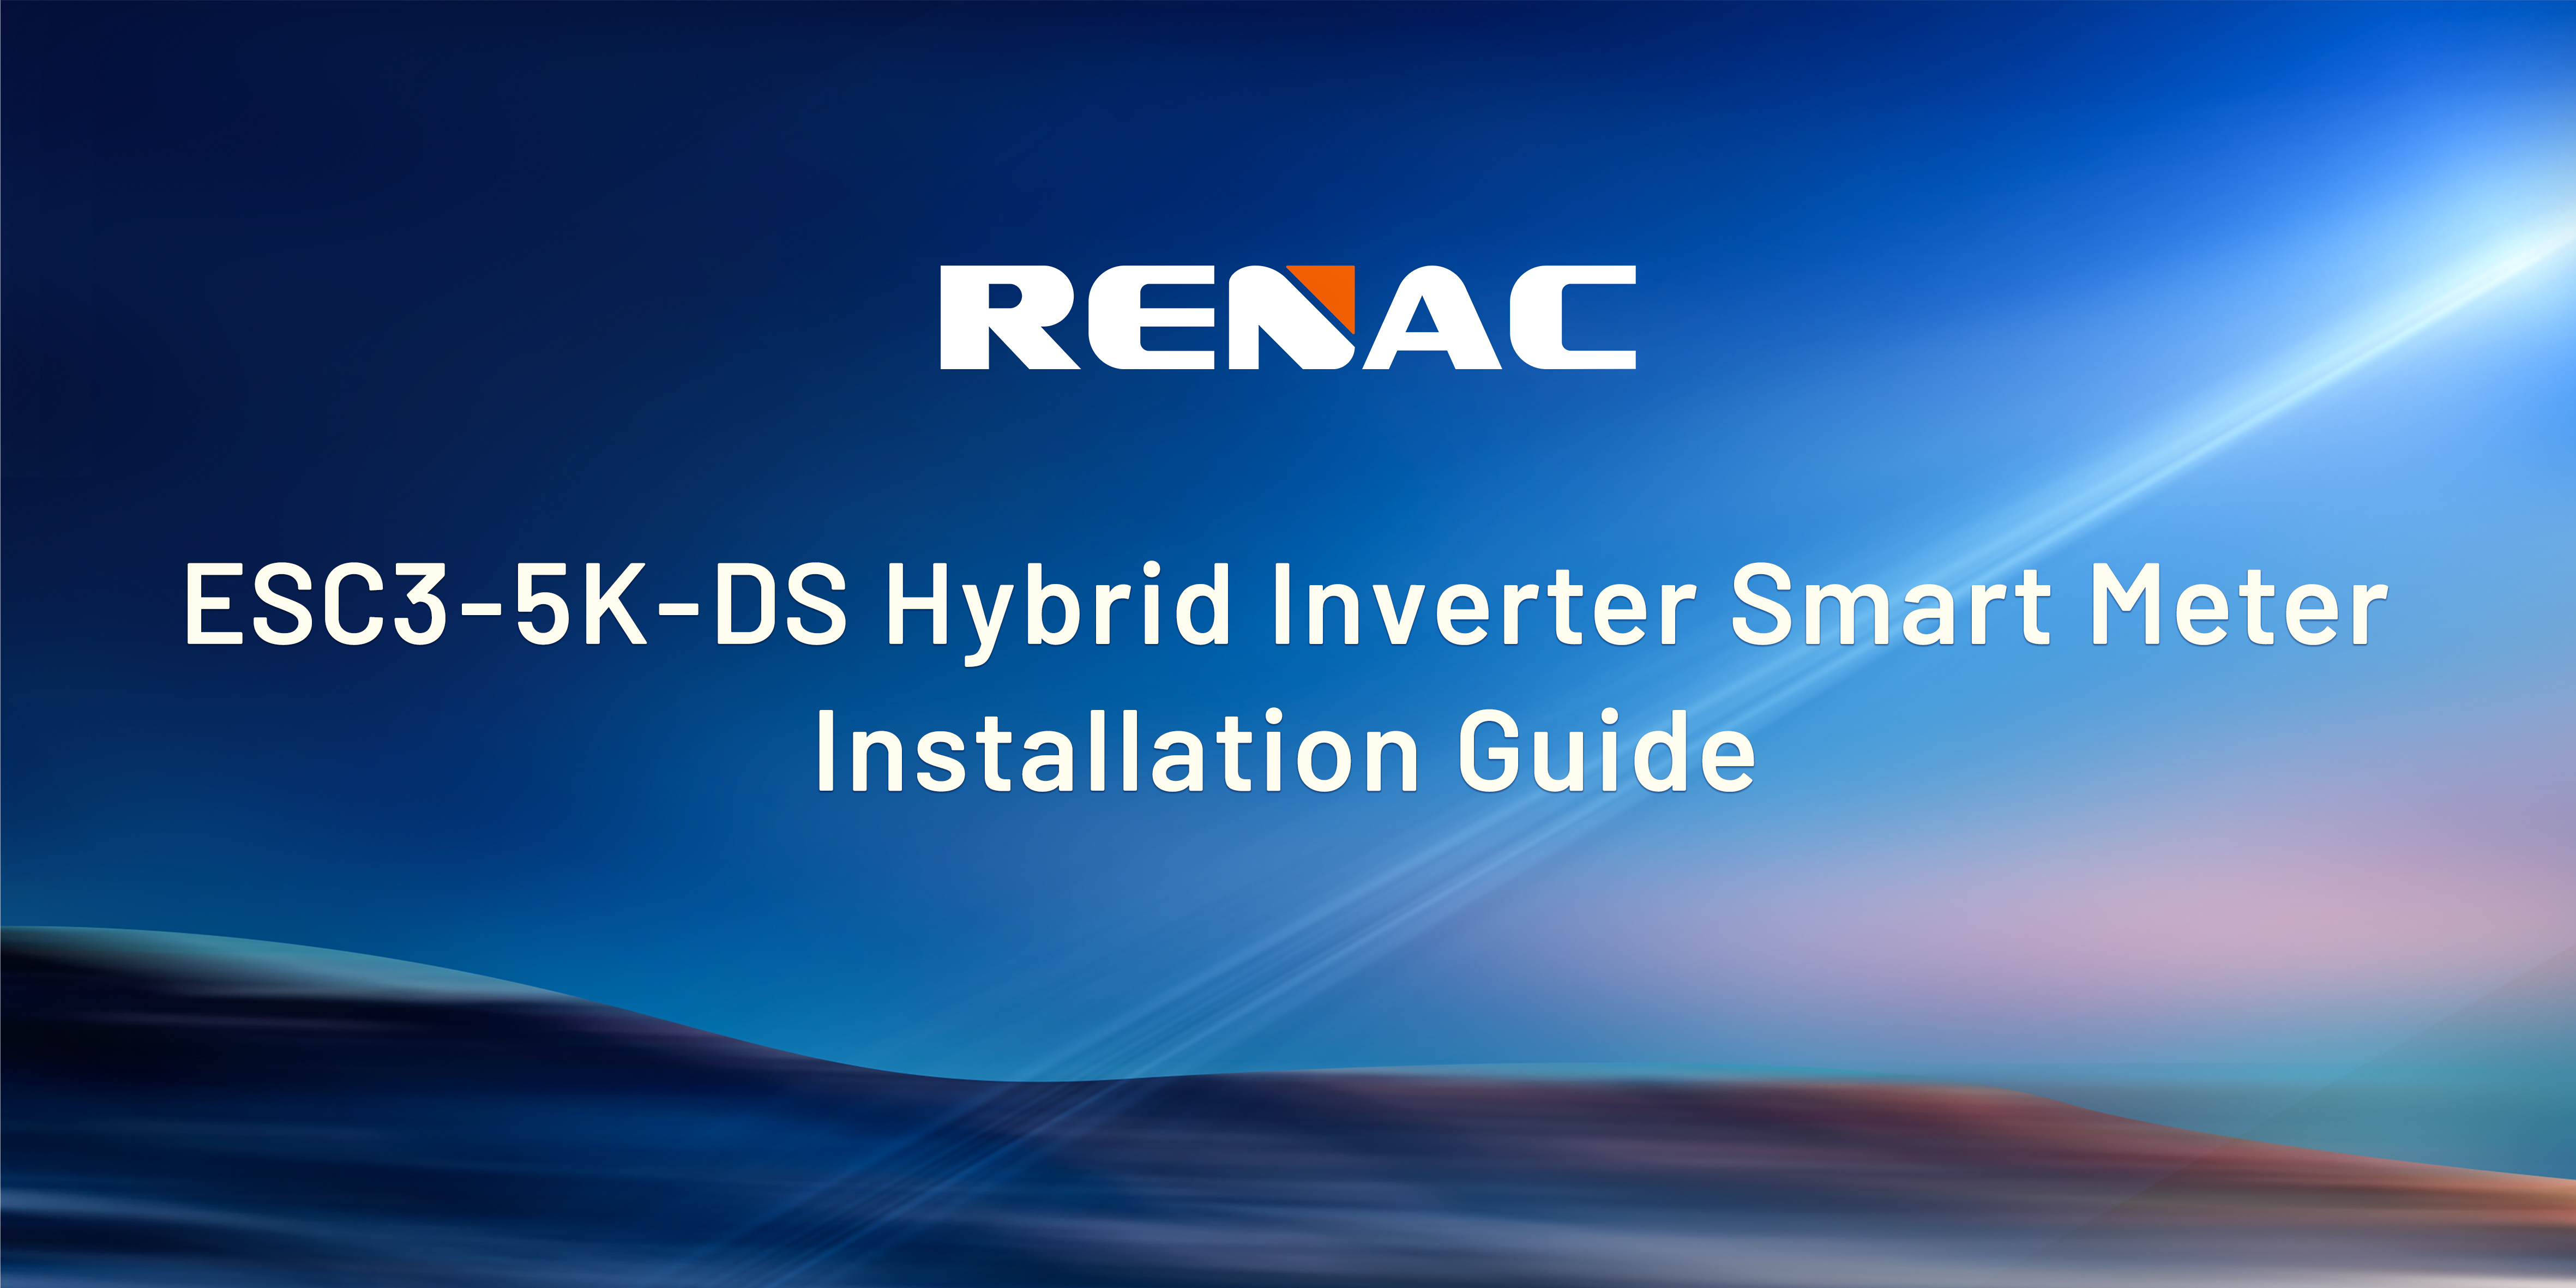 ESC3-5K-DS Hybrid Inverter Smart Meter Installation Guide